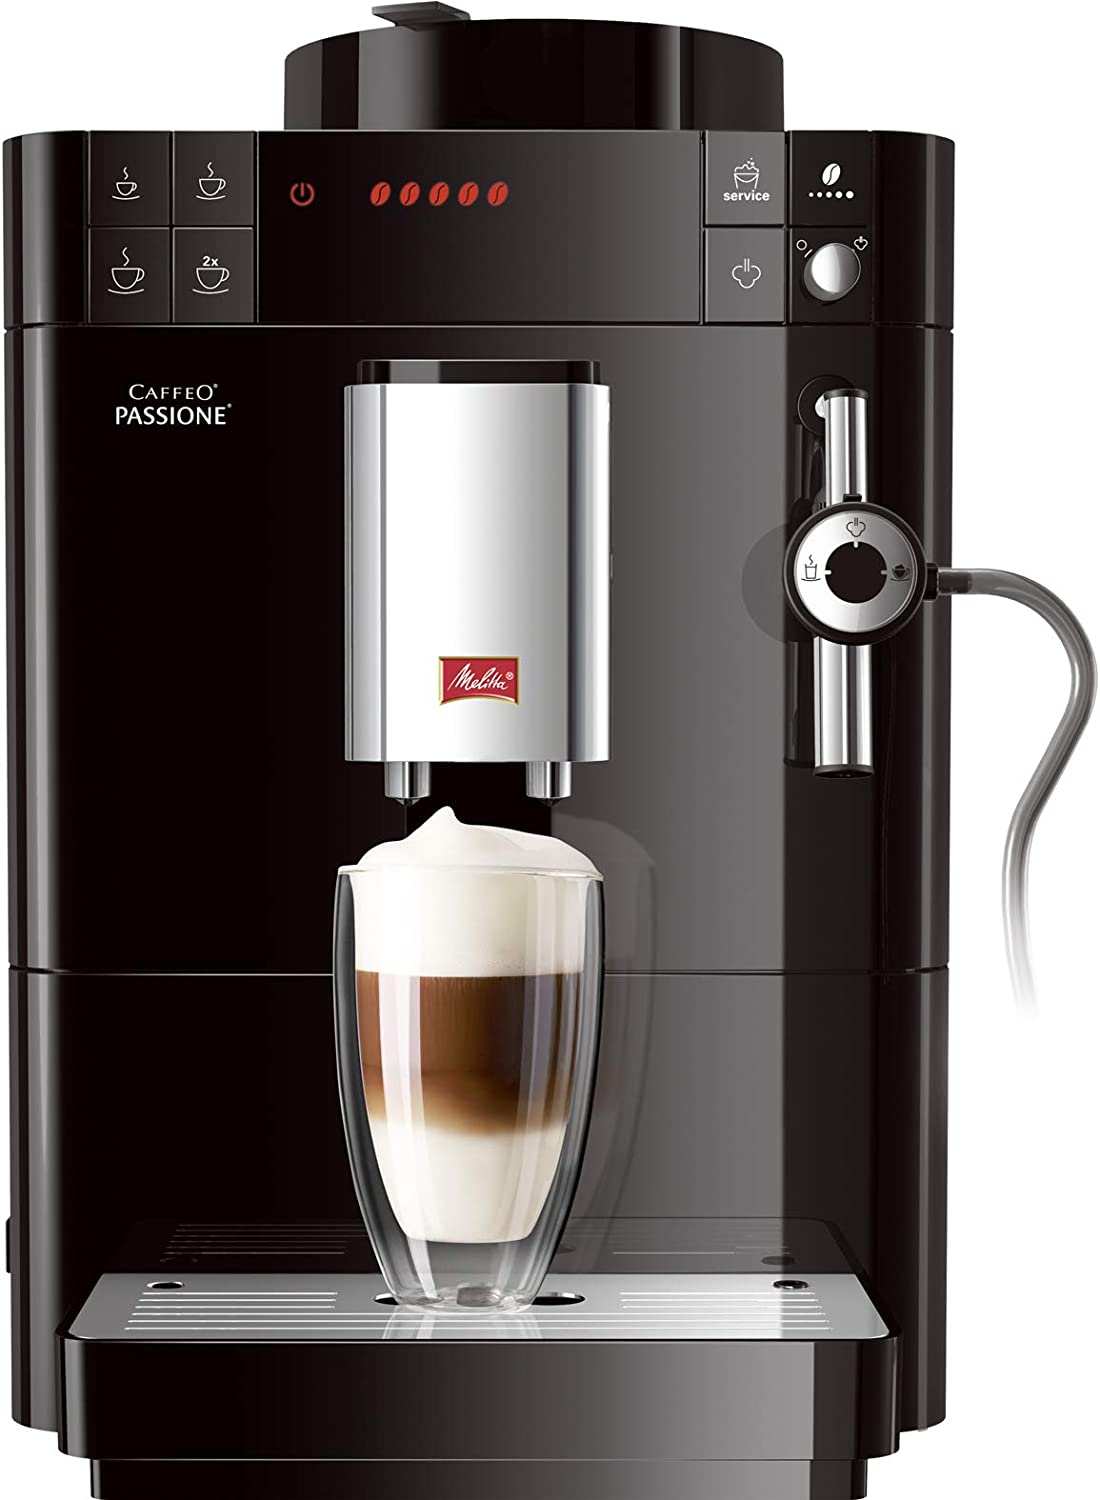 Melitta Caffeo Passione, Coffee machine, Black